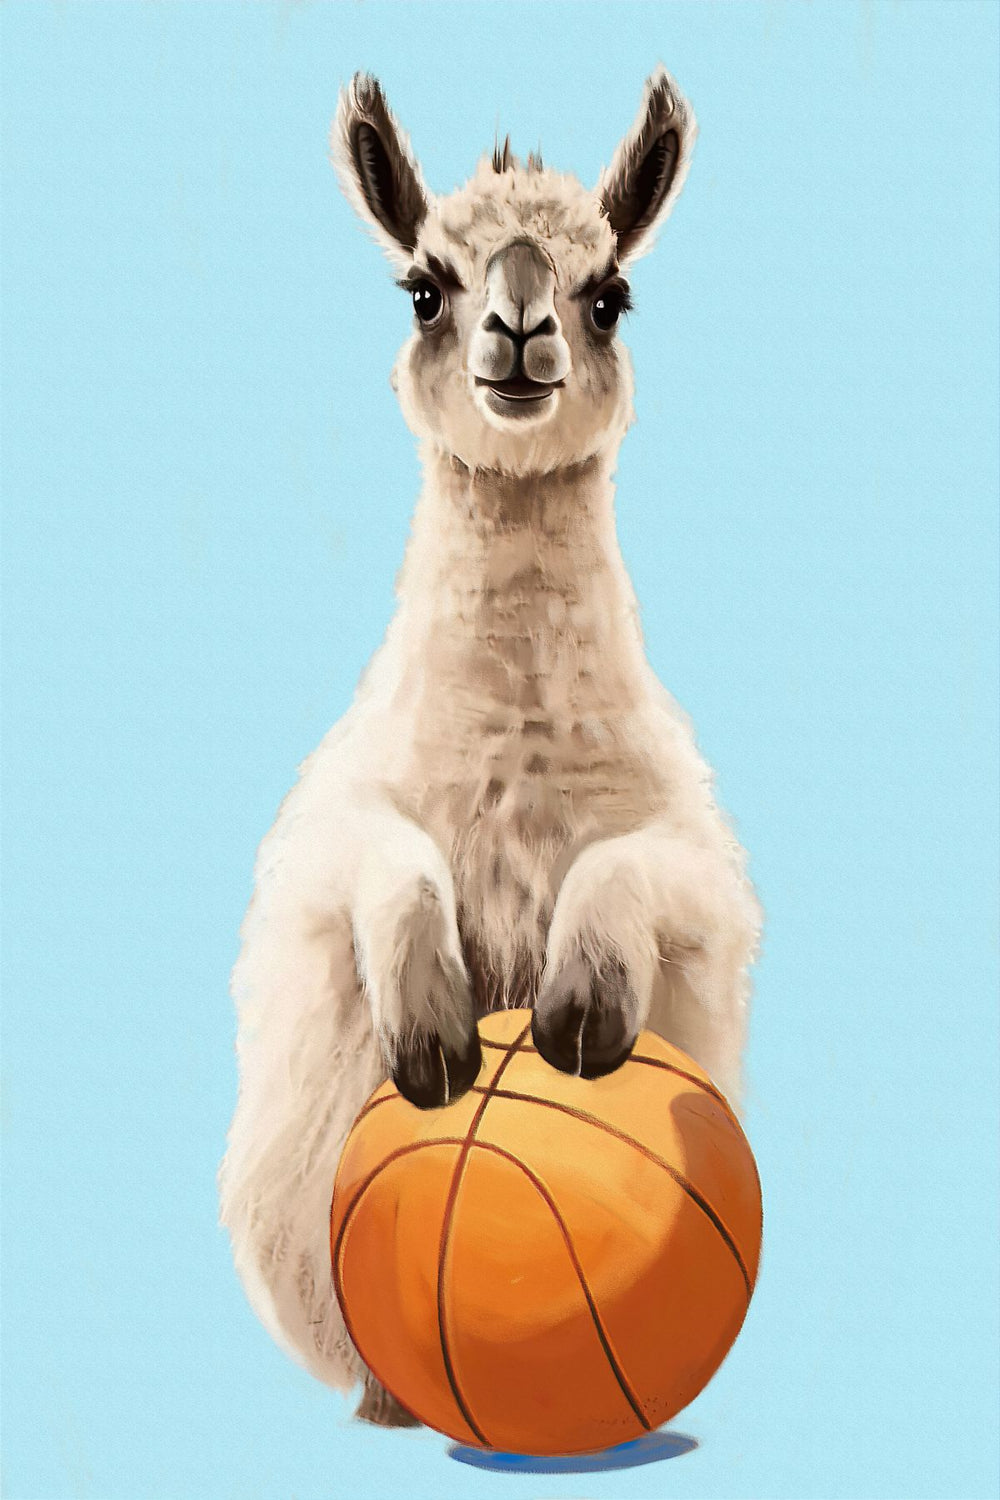 Sporty Llama - Basketball